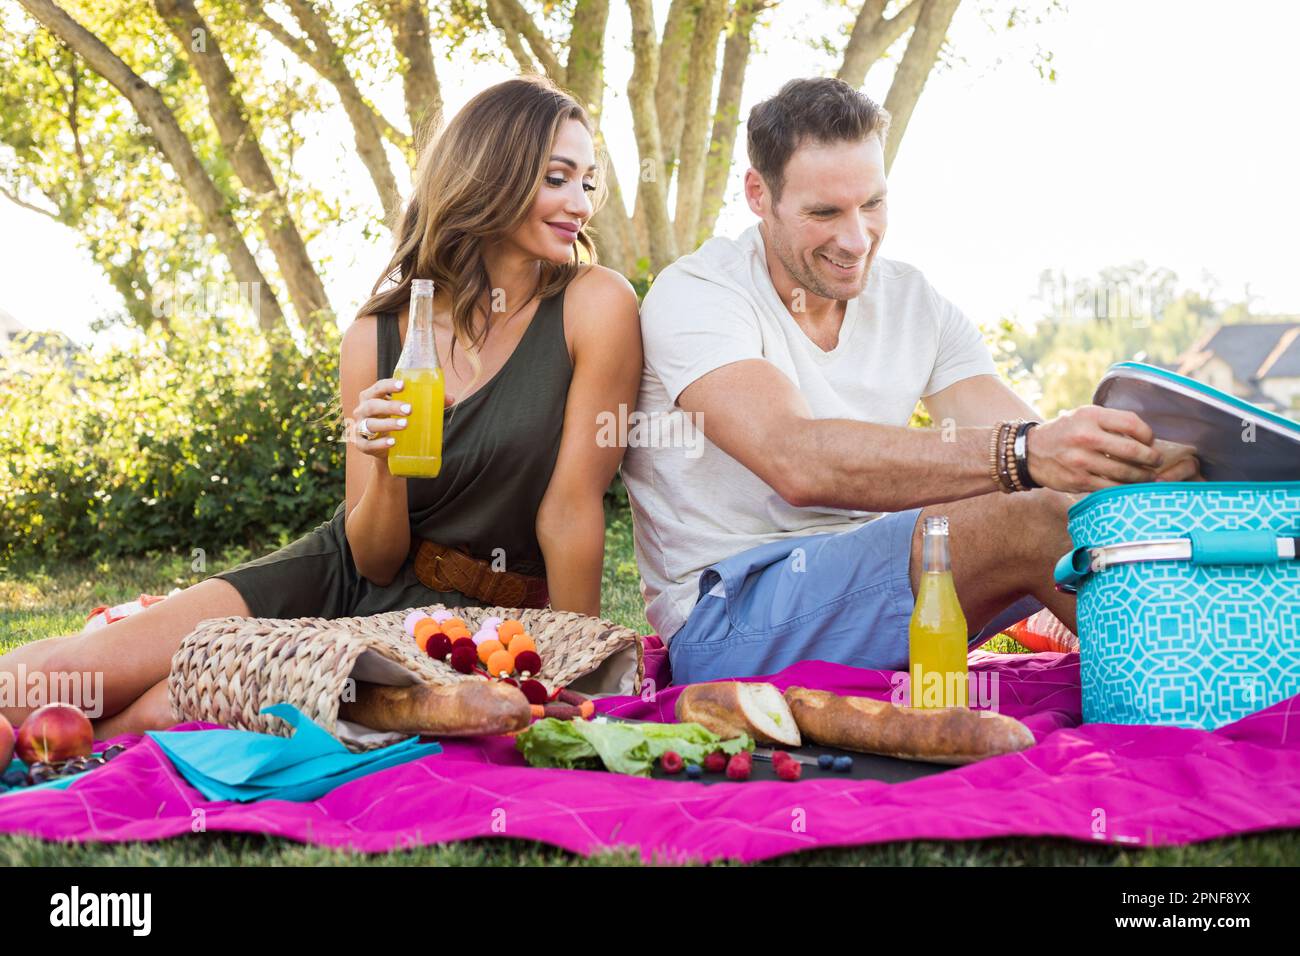 Couple having picnic in park Stock Photo